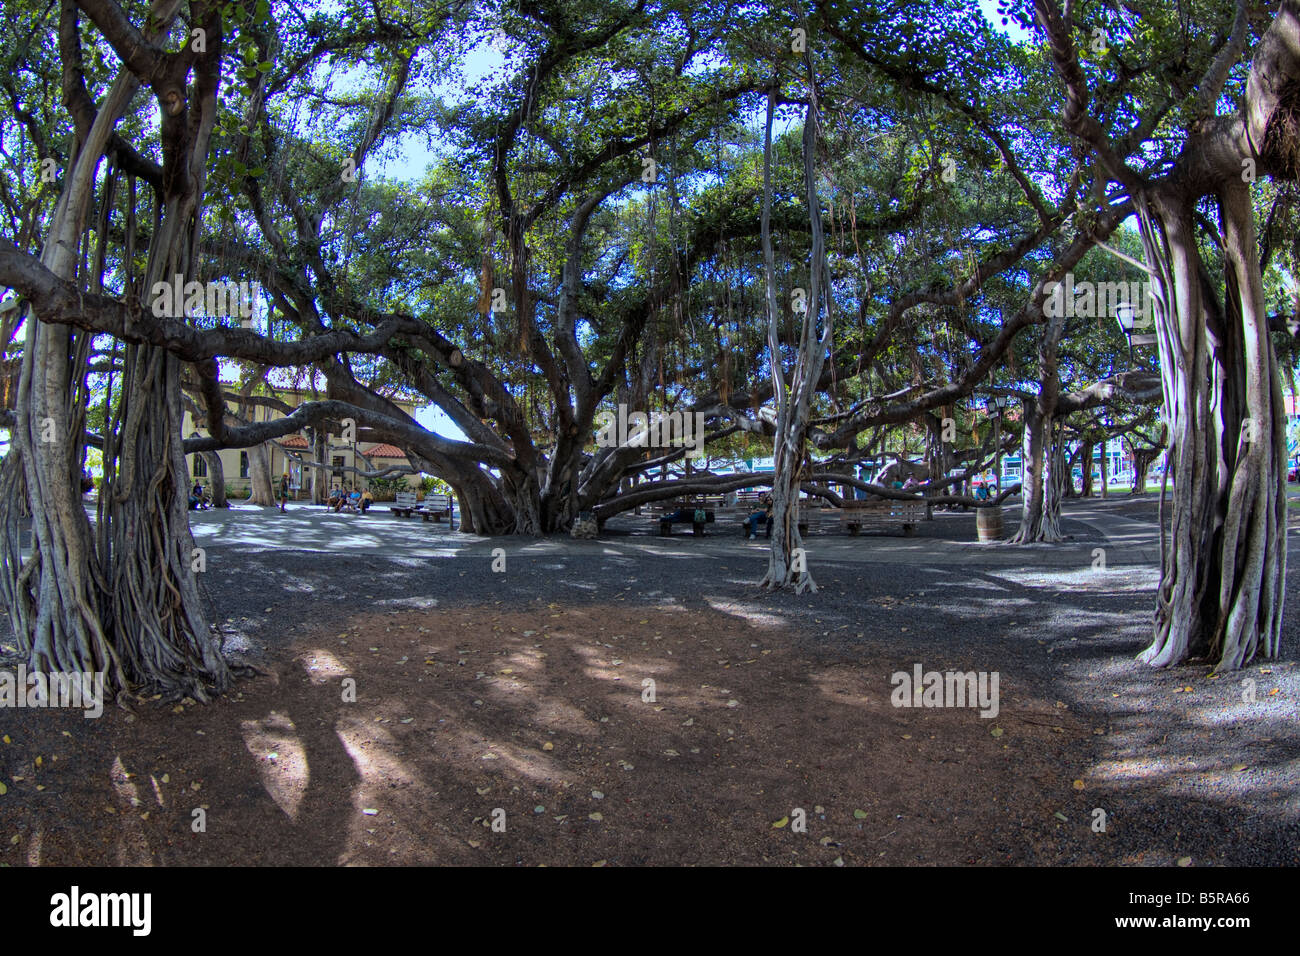 Das Banyan Tree wurde im Jahre 1873 gepflanzt und ist eines der größten in den USA für einen ganzen Häuserblock, Lahaina, Maui, Hawaii. Stockfoto